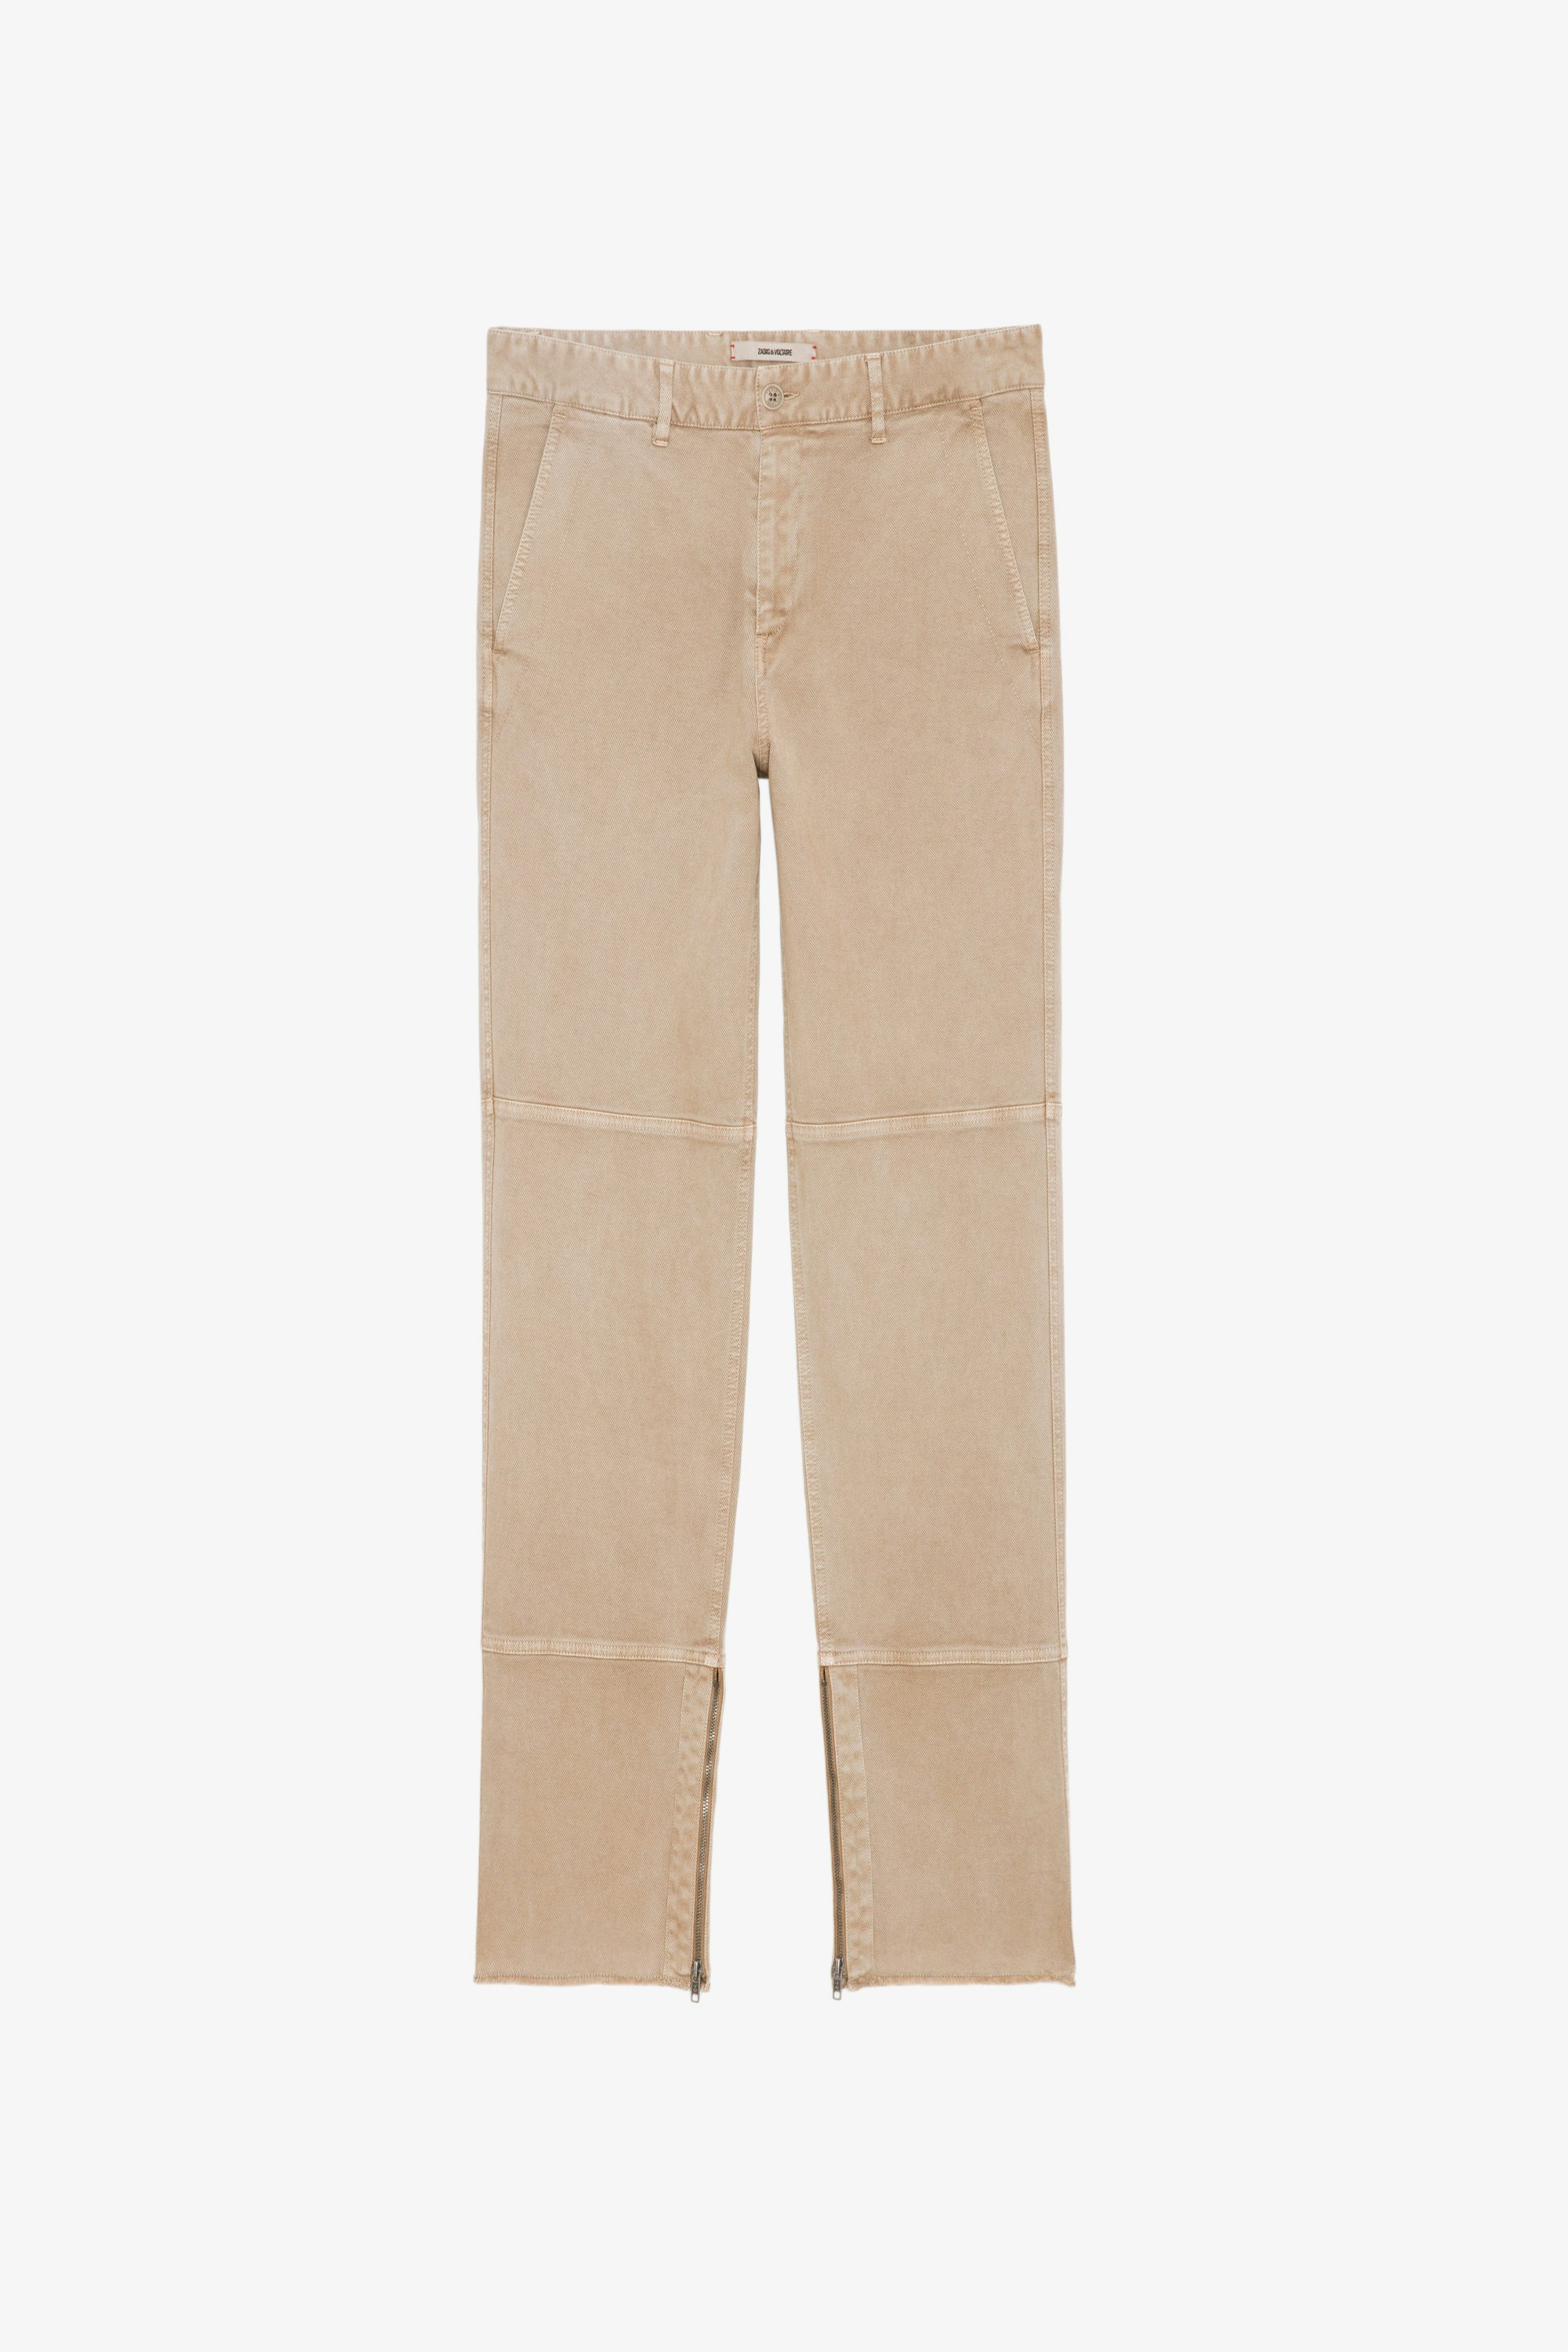 Pantalón Pocky - Pantalón de algodón en color beige claro con cremallera y bordes sin rematar.